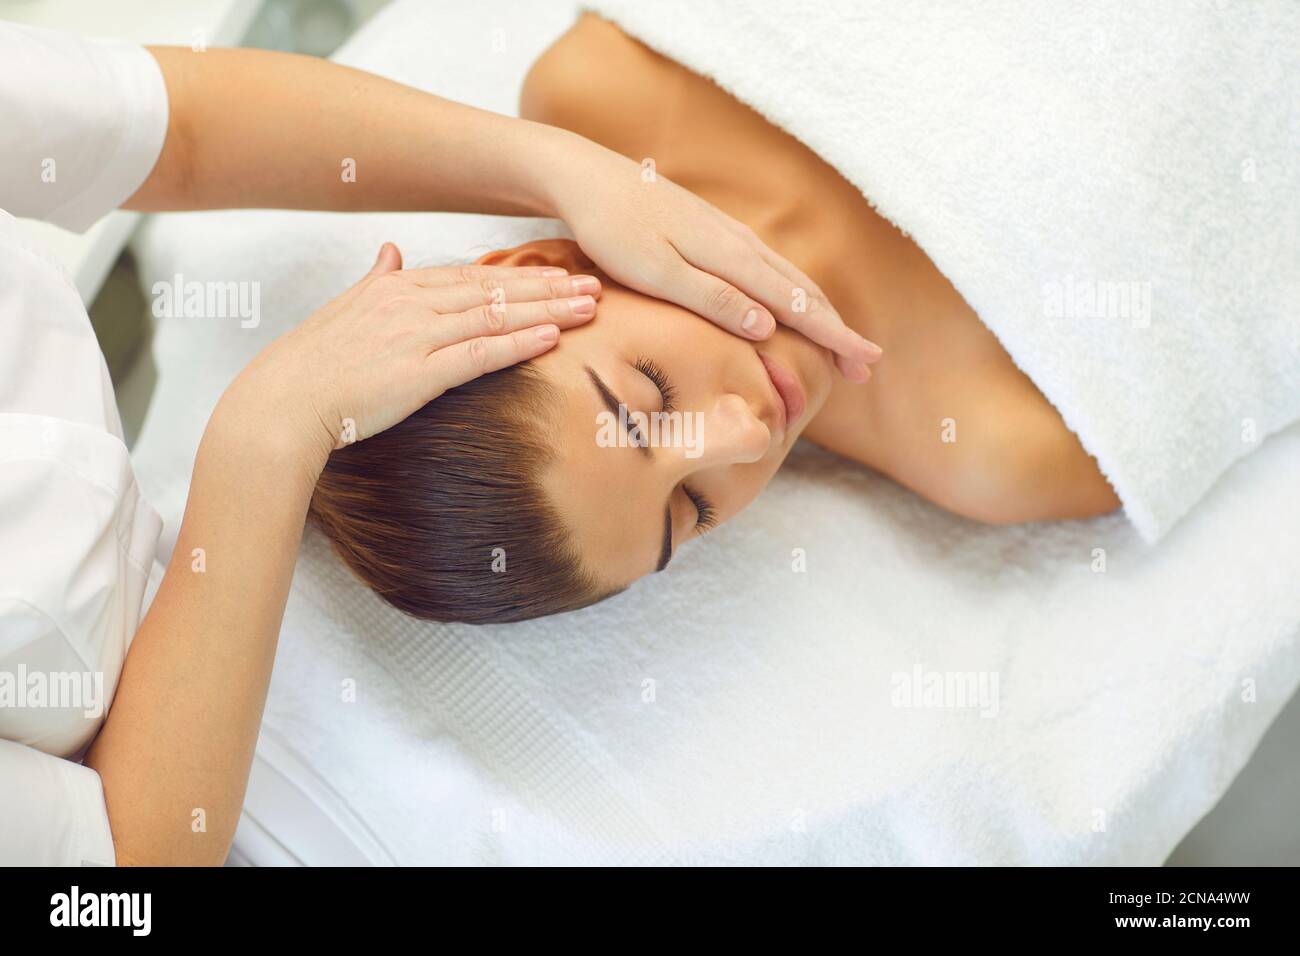 La giovane donna giace su un divano e riceve una testa massaggio dalle mani di un massaggiatore Foto Stock